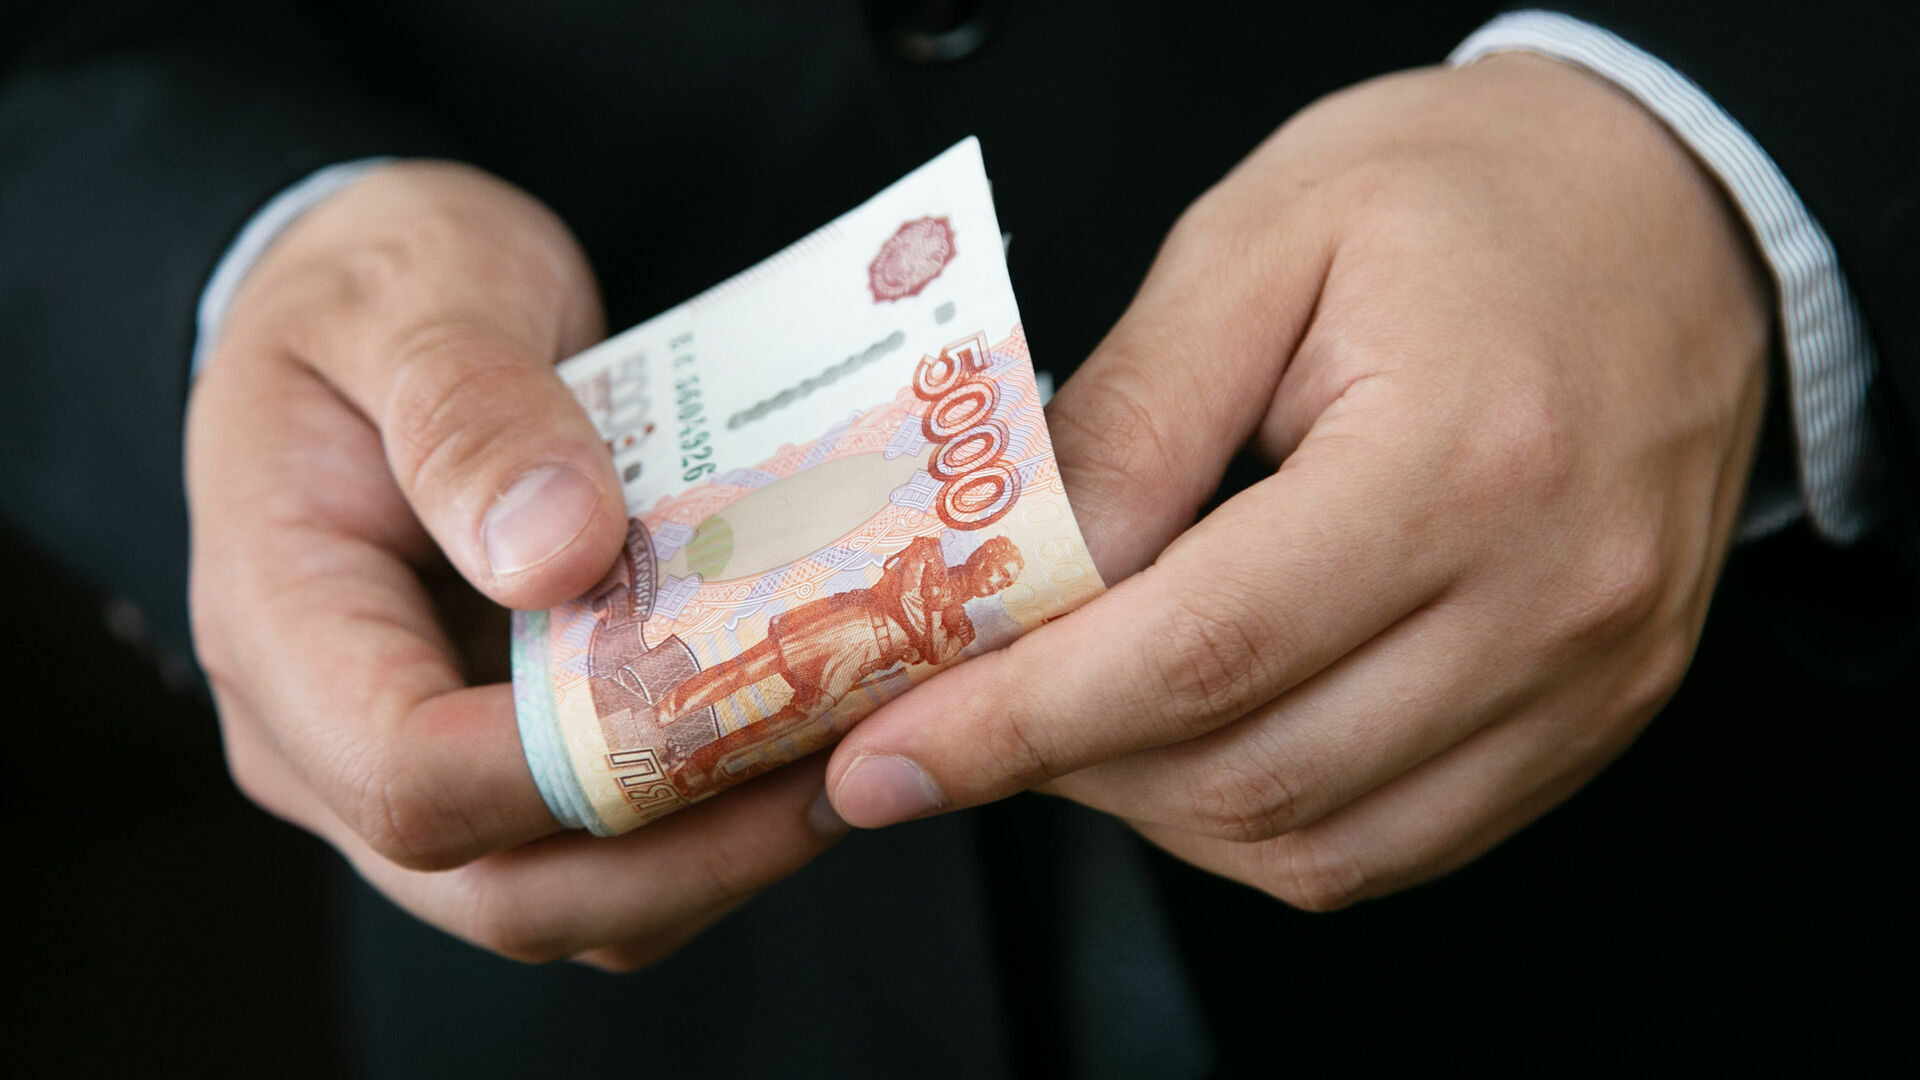 Гендиректору завода в Прикамье предлагали взятку в 3,55 миллиона рублей